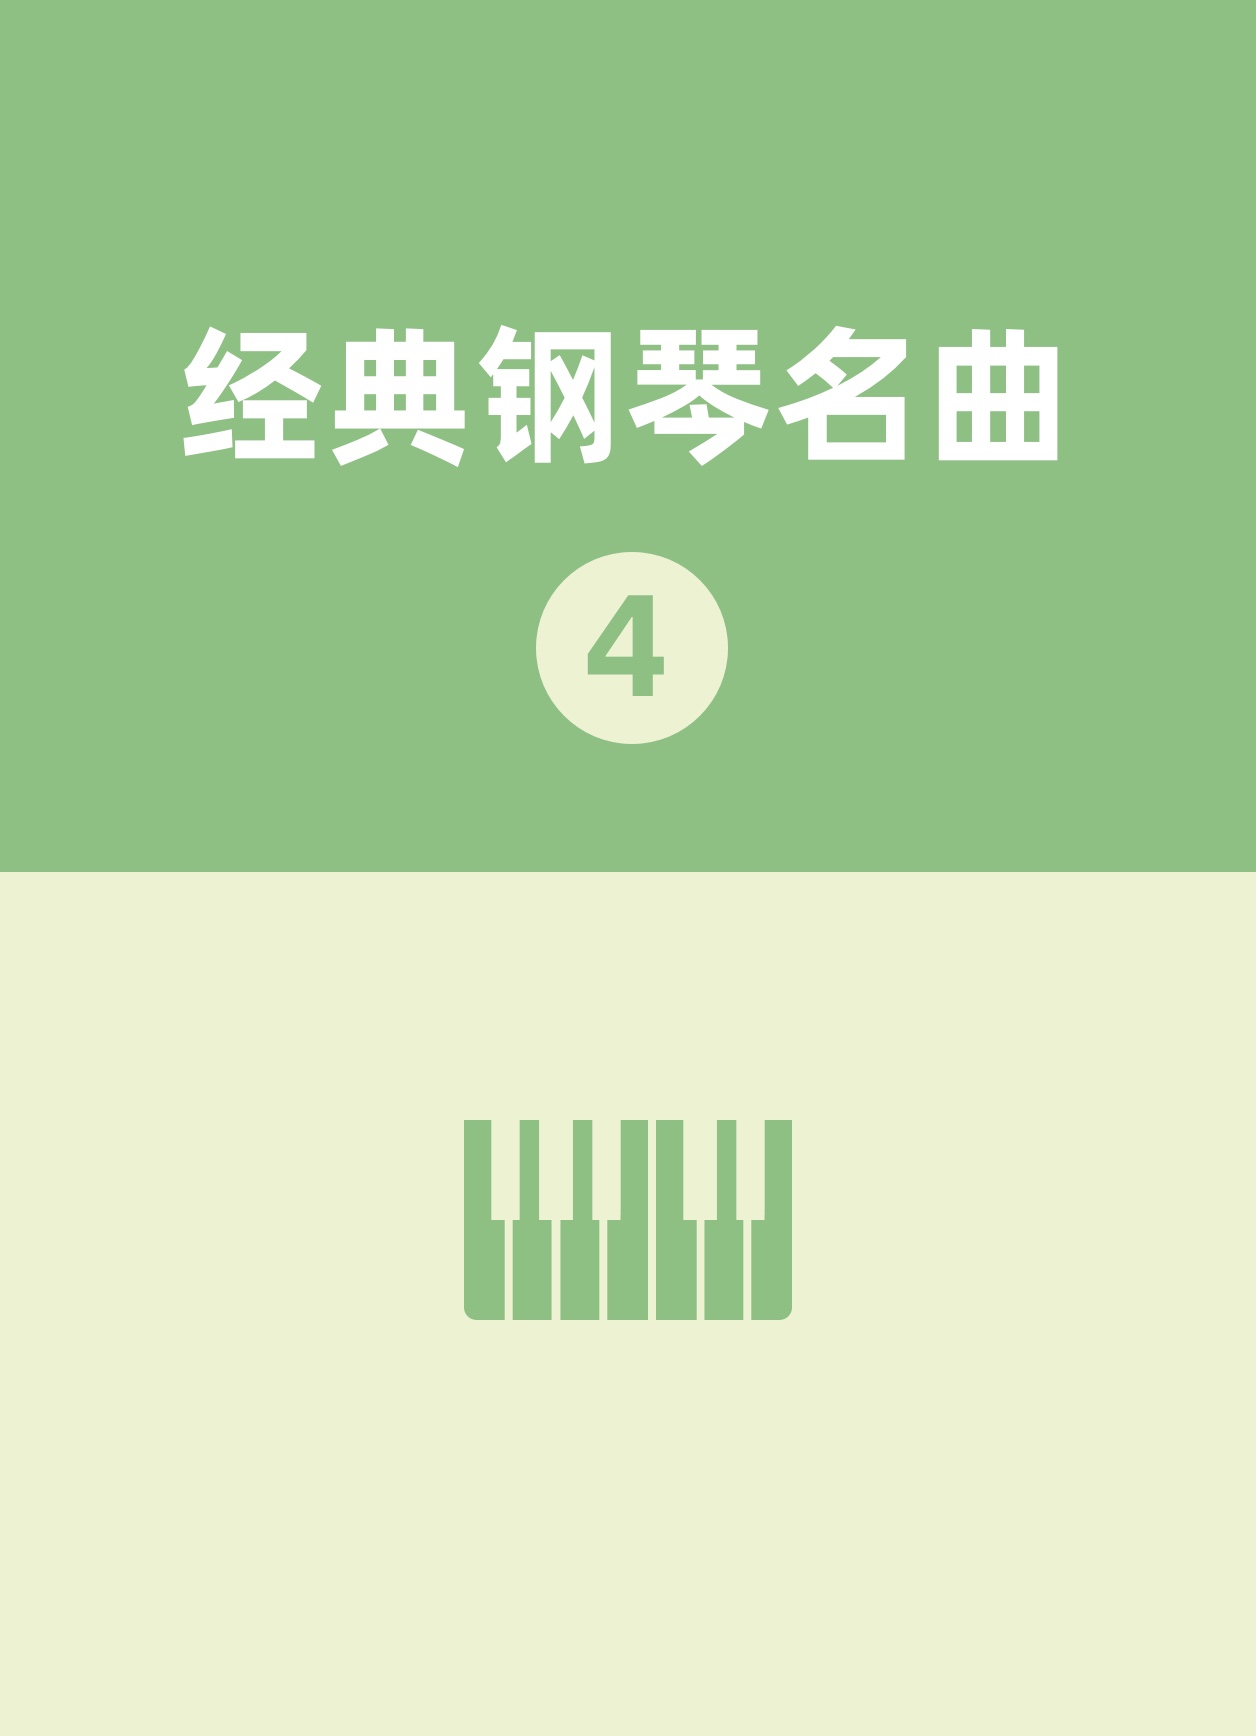 31.练习曲钢琴简谱 数字双手